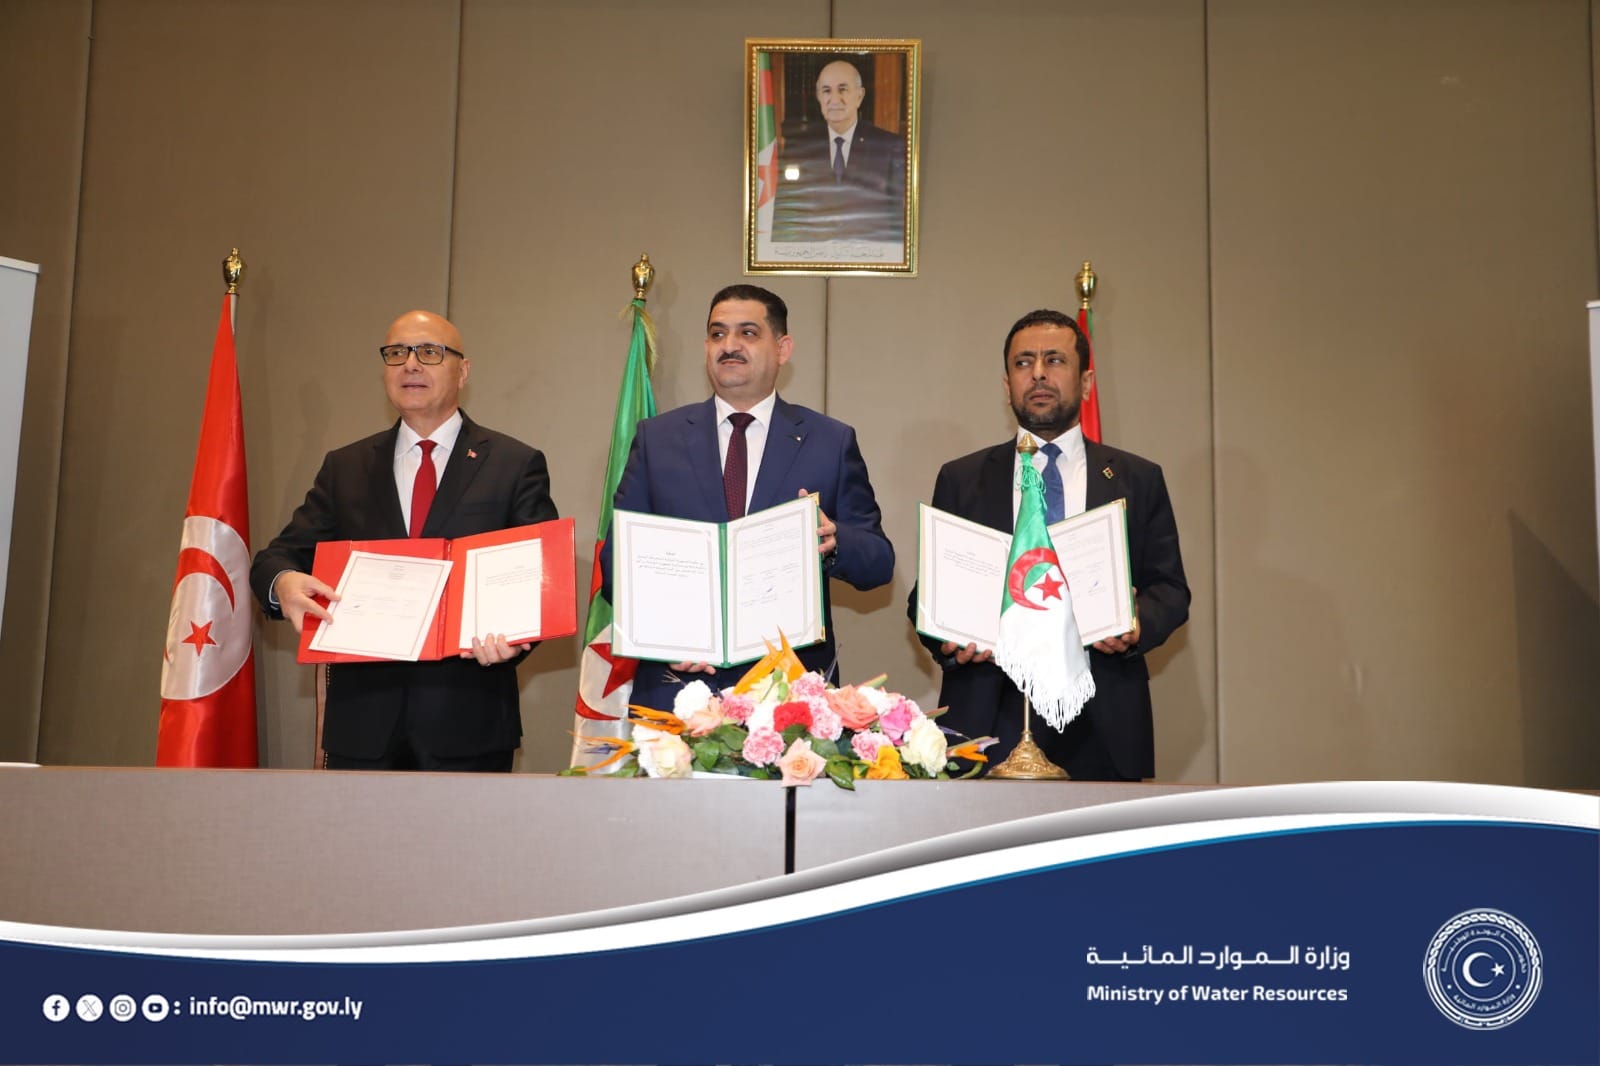 ليبيا والجزائر وتونس يتفقان على آلية حول إدارة المياه الجوفية المشتركة بينها بالصحراء الشمالية.